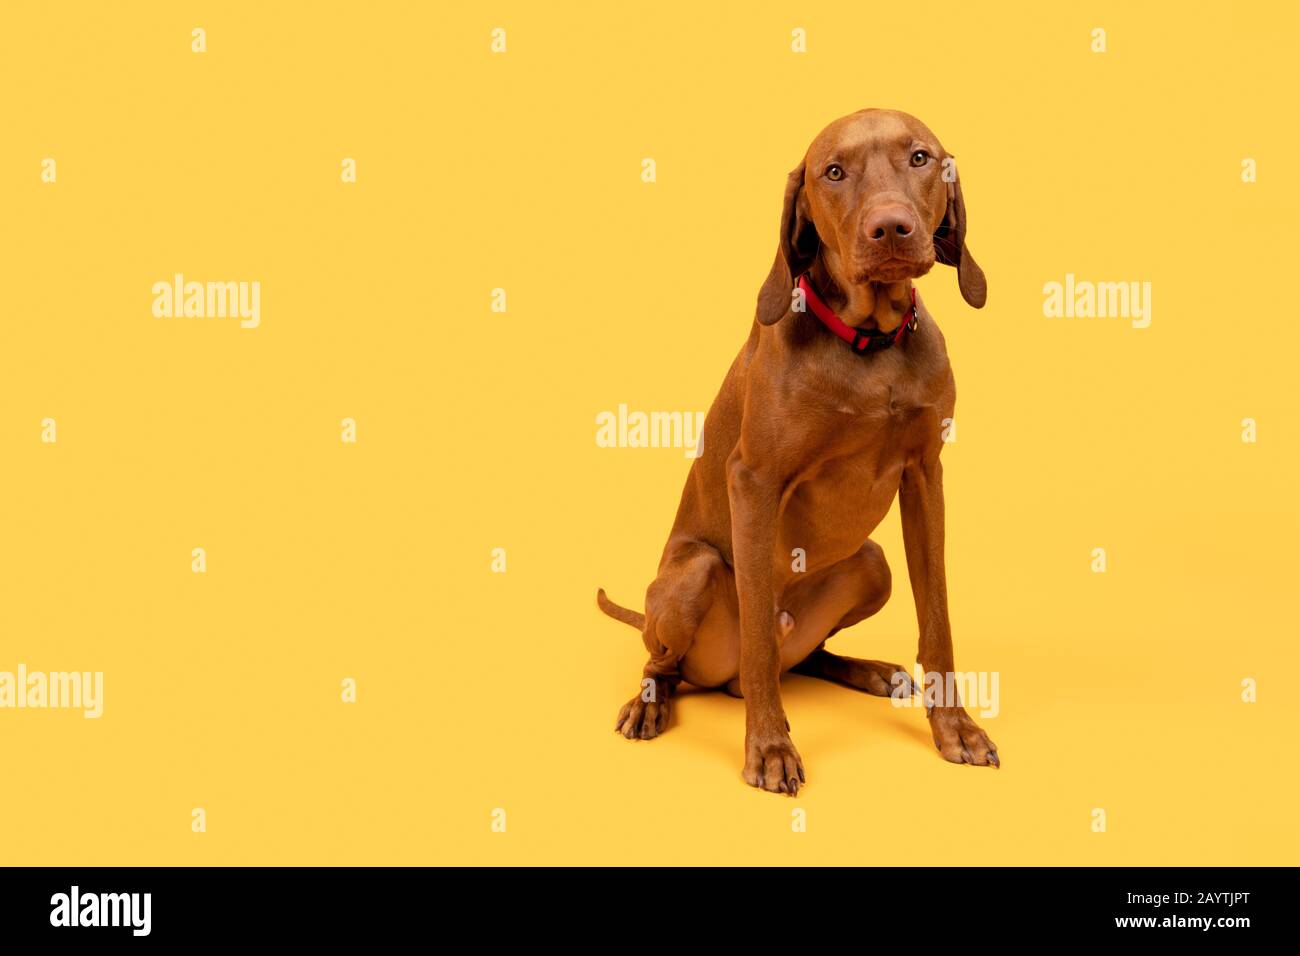 Carino divertente ungherese vizsla cane full body studio ritratto. Divertente cane seduto e guardando la fotocamera, vista frontale su sfondo giallo brillante. Foto Stock